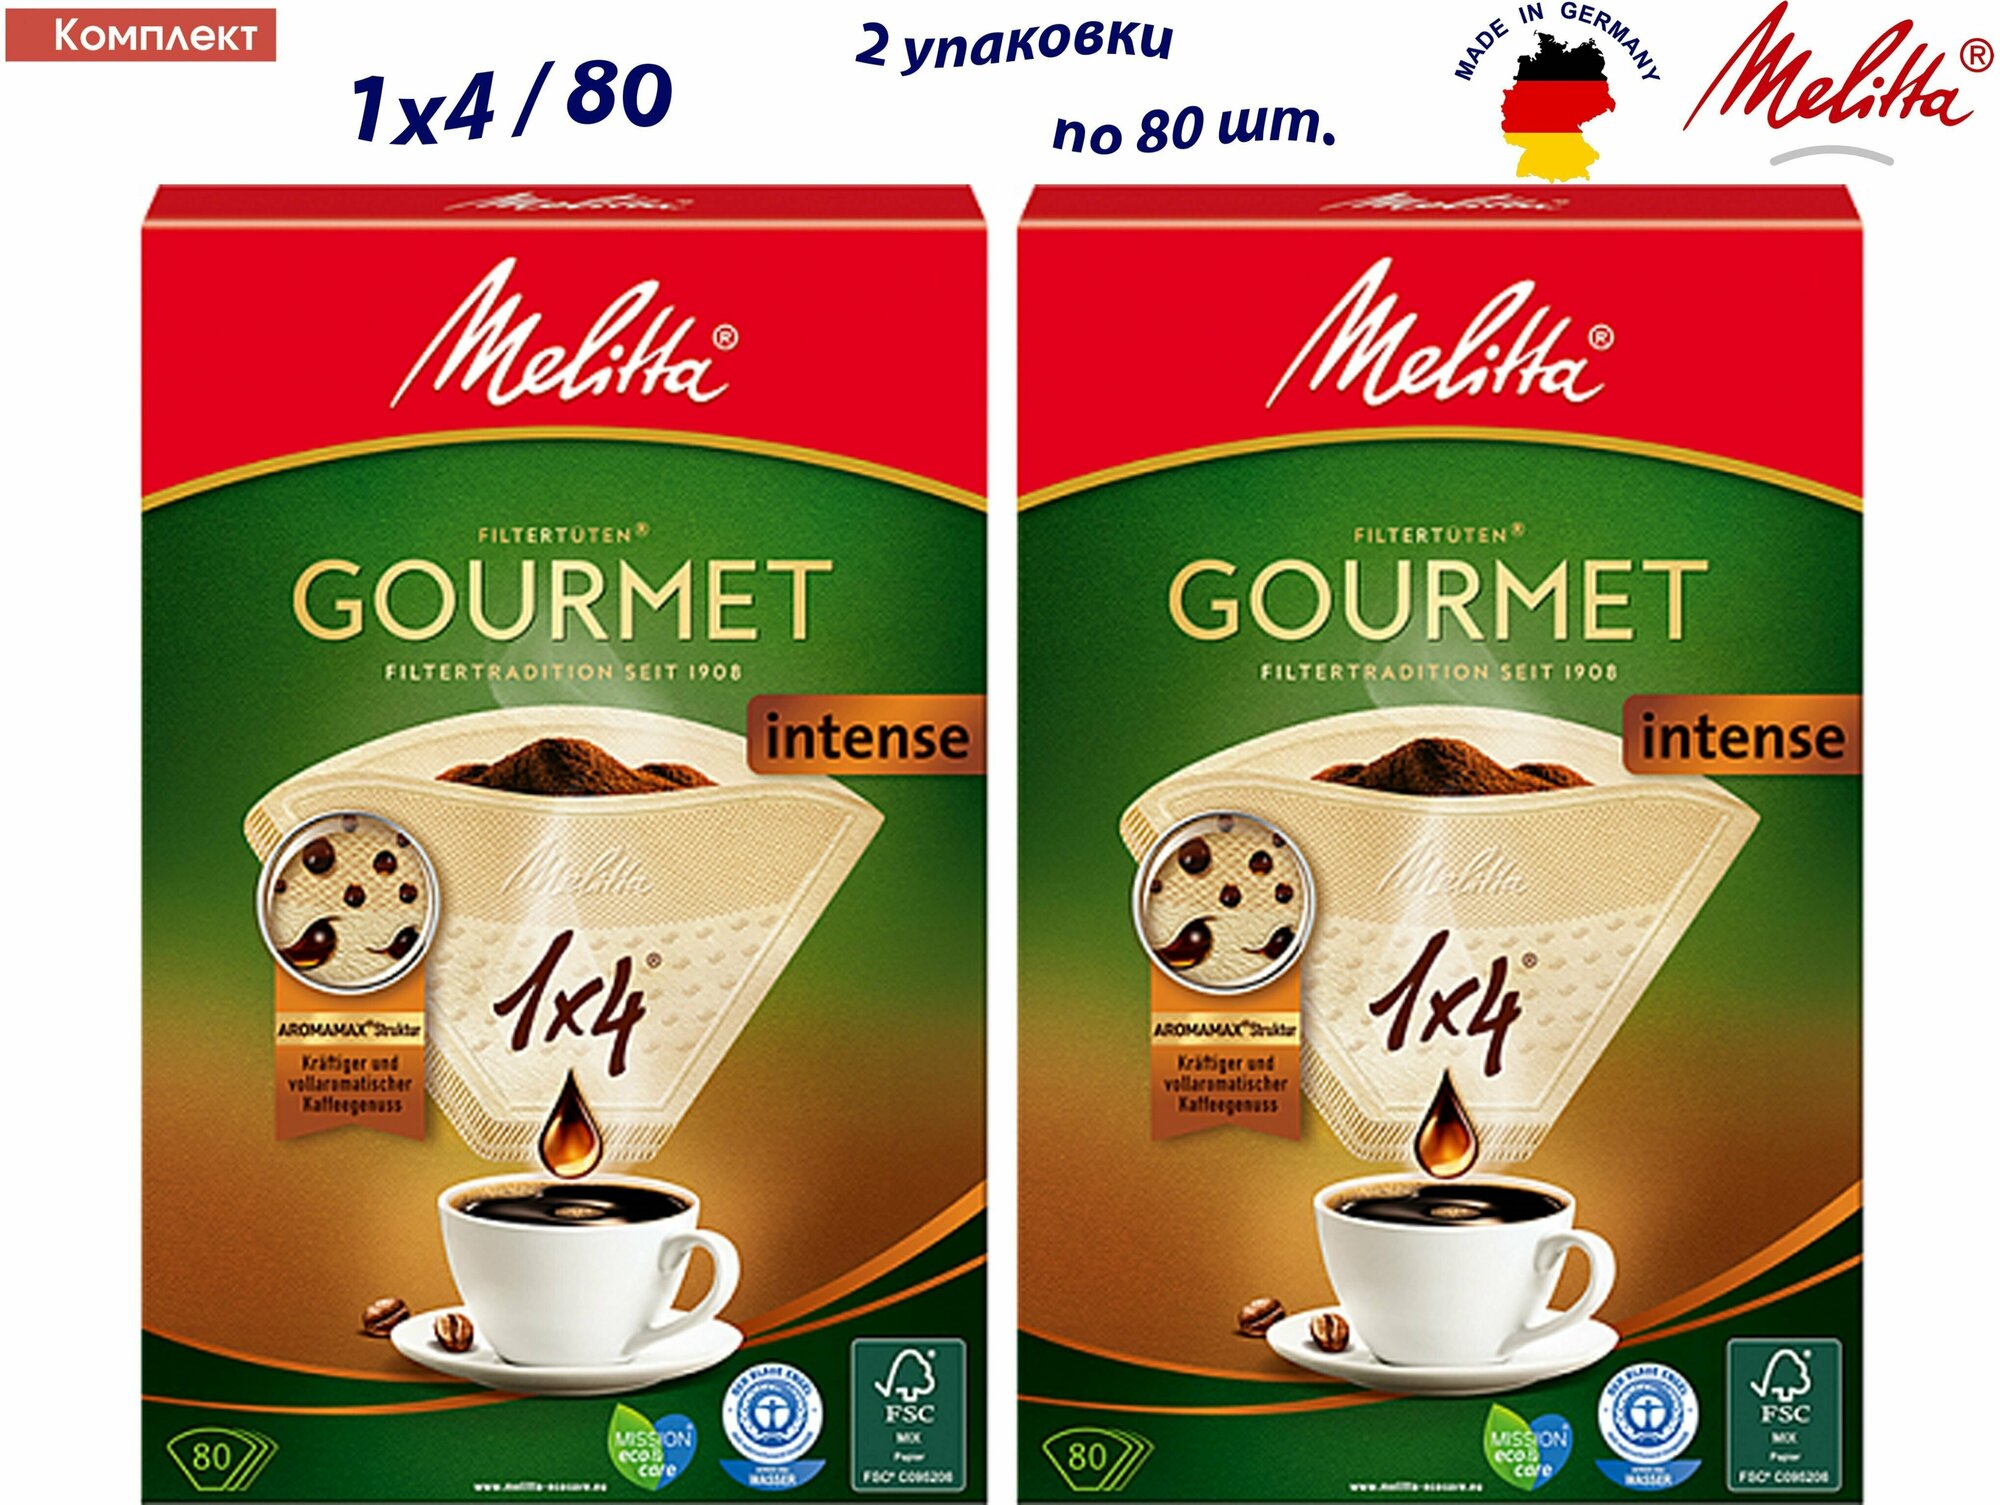 Комплект: 2 упаковки Оригинальные бумажные фильтры Melitta Gourmet Intense, 1х4, 80шт, коричневые